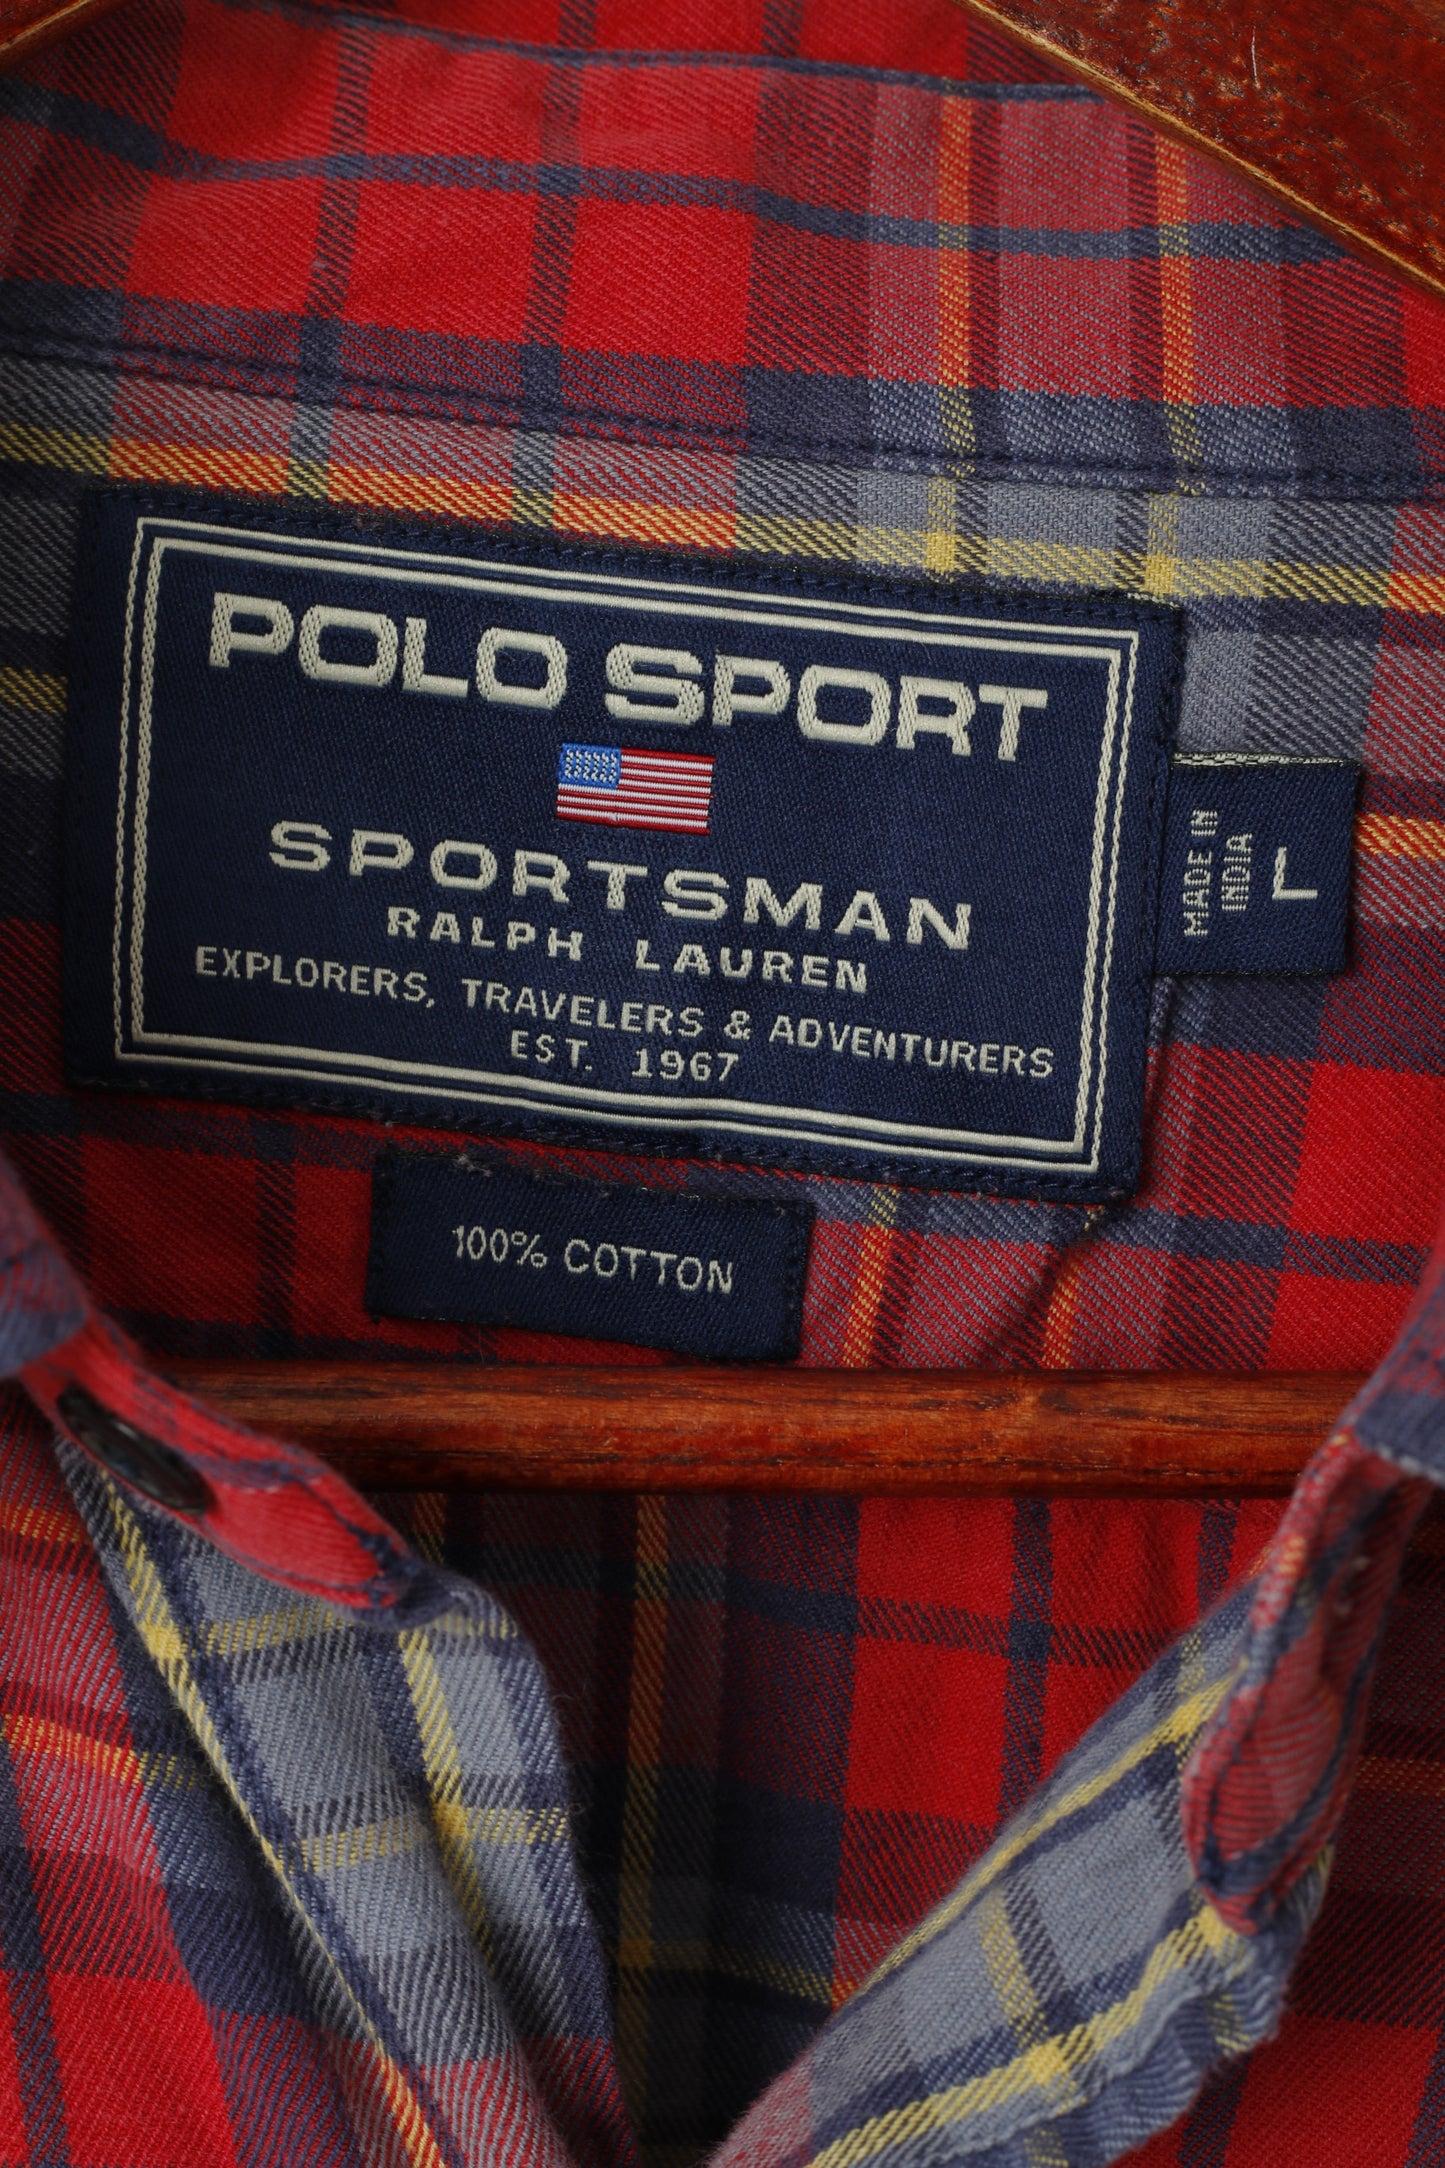 Polo Sport Ralph Lauren Men L (XL) Casual Shirt Red Checkered Cotton Long Sleeve Top